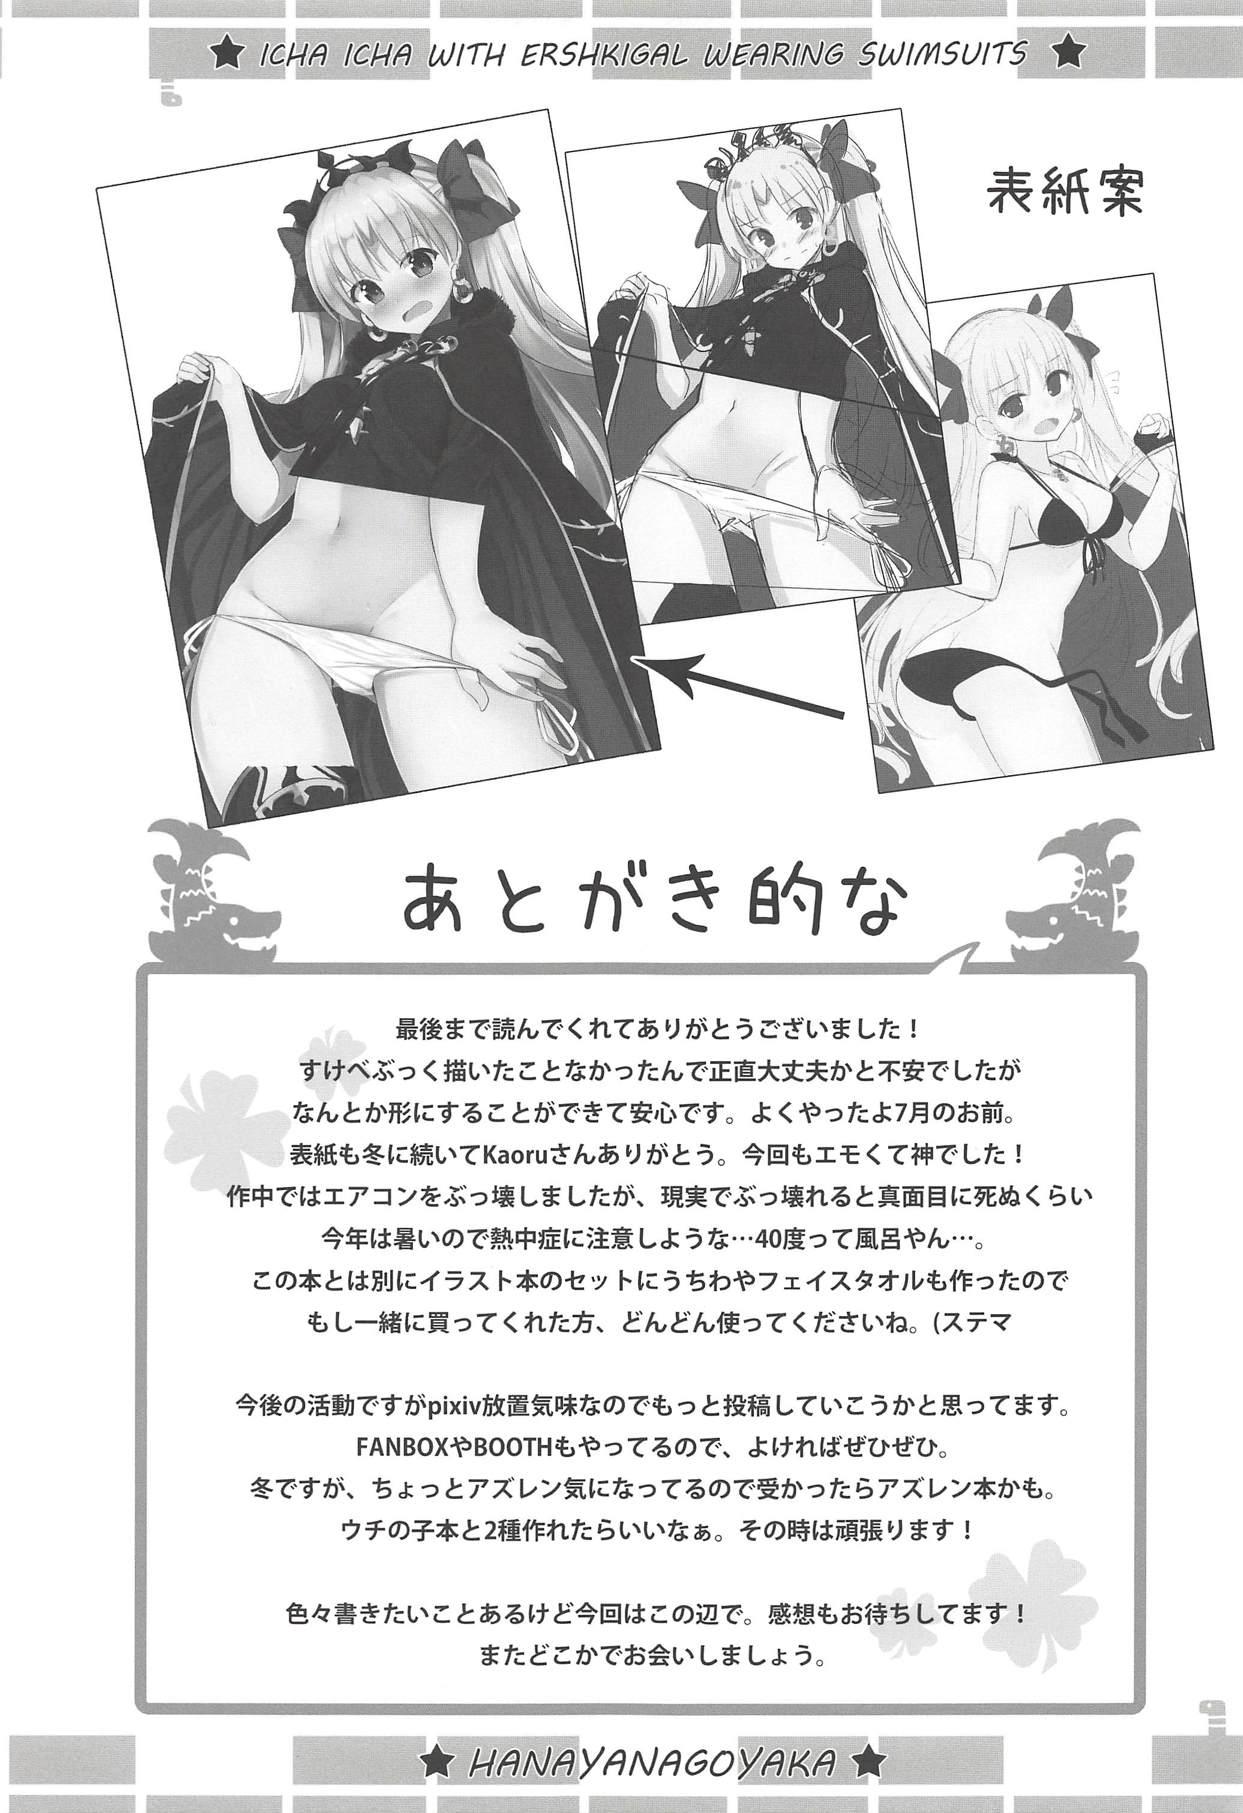 Flaquita Mizugi no Ereshkigal to Icha Tsukitai! - Icha Icha with Ereshkigal Wearing Swimsuits. - Fate grand order Chupando - Page 24